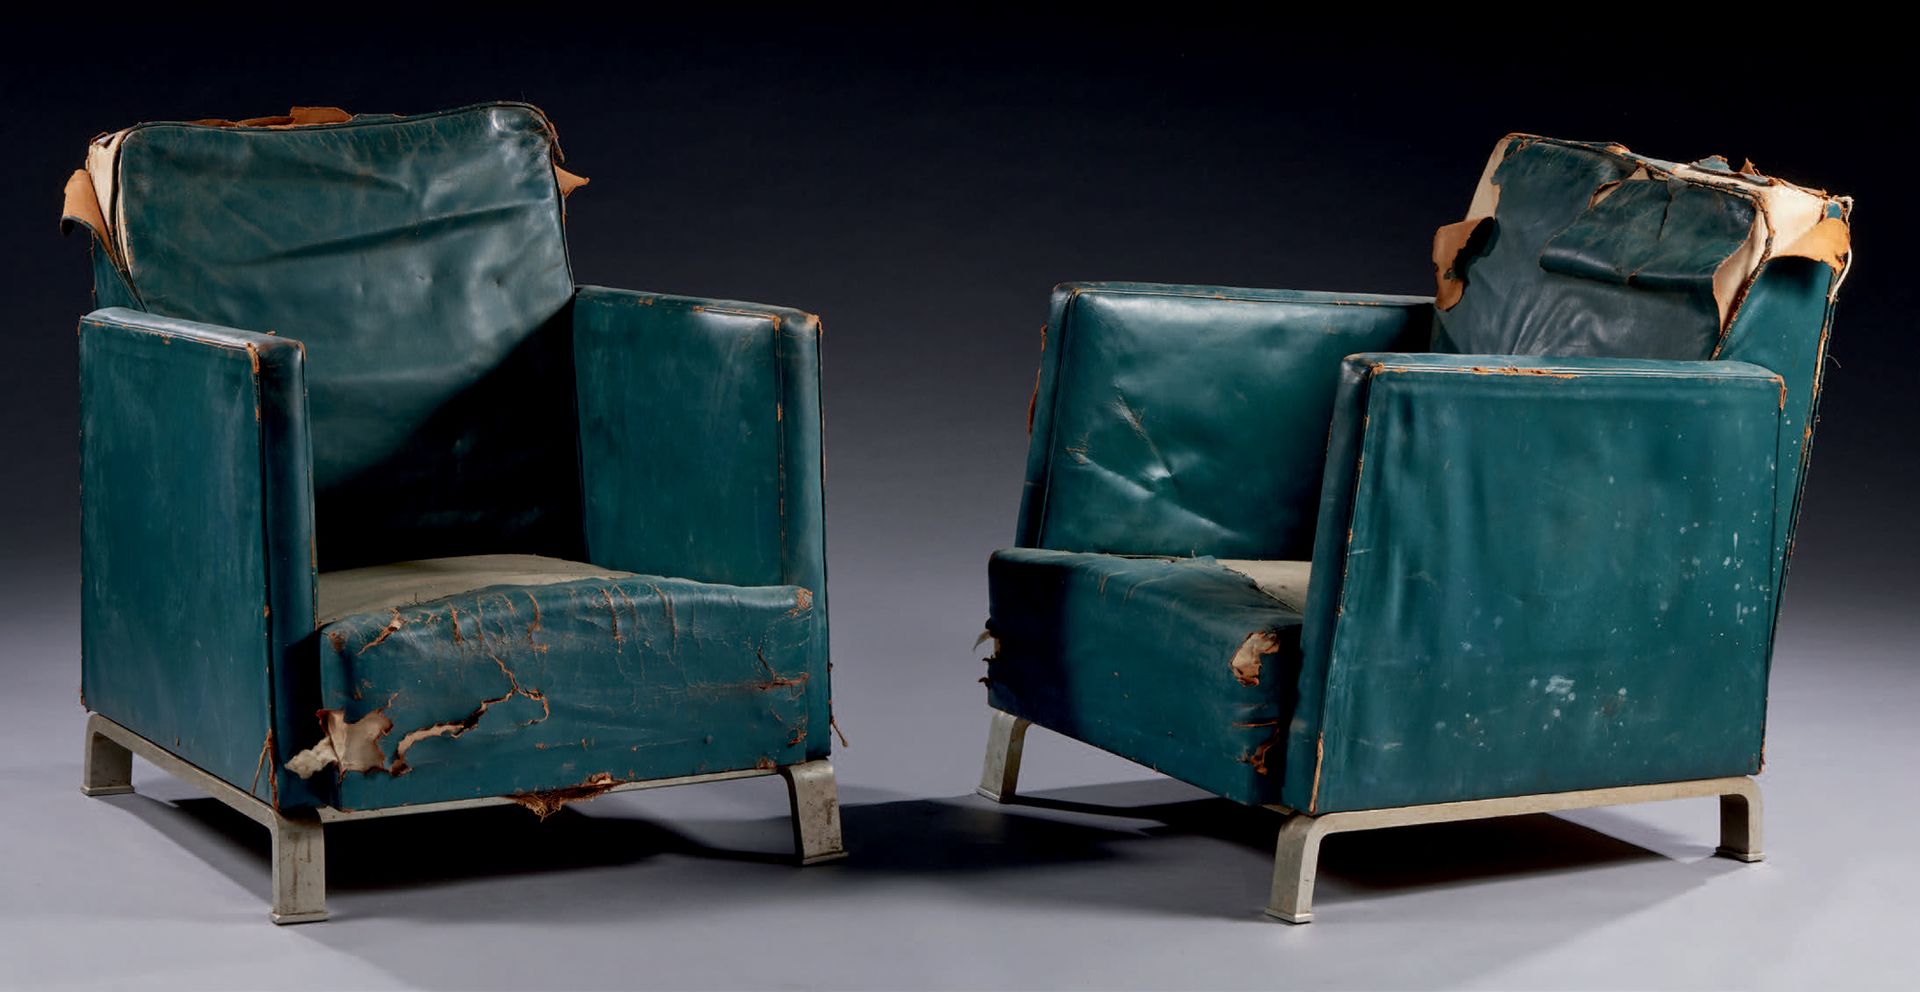 TRAVAIL MODERNISTE 一对扶手椅，木质结构，镀铬金属腿，绿色皮革装饰
大约1930年
高：80 宽：70 深：85厘米
 （事故和丢失的部分）。